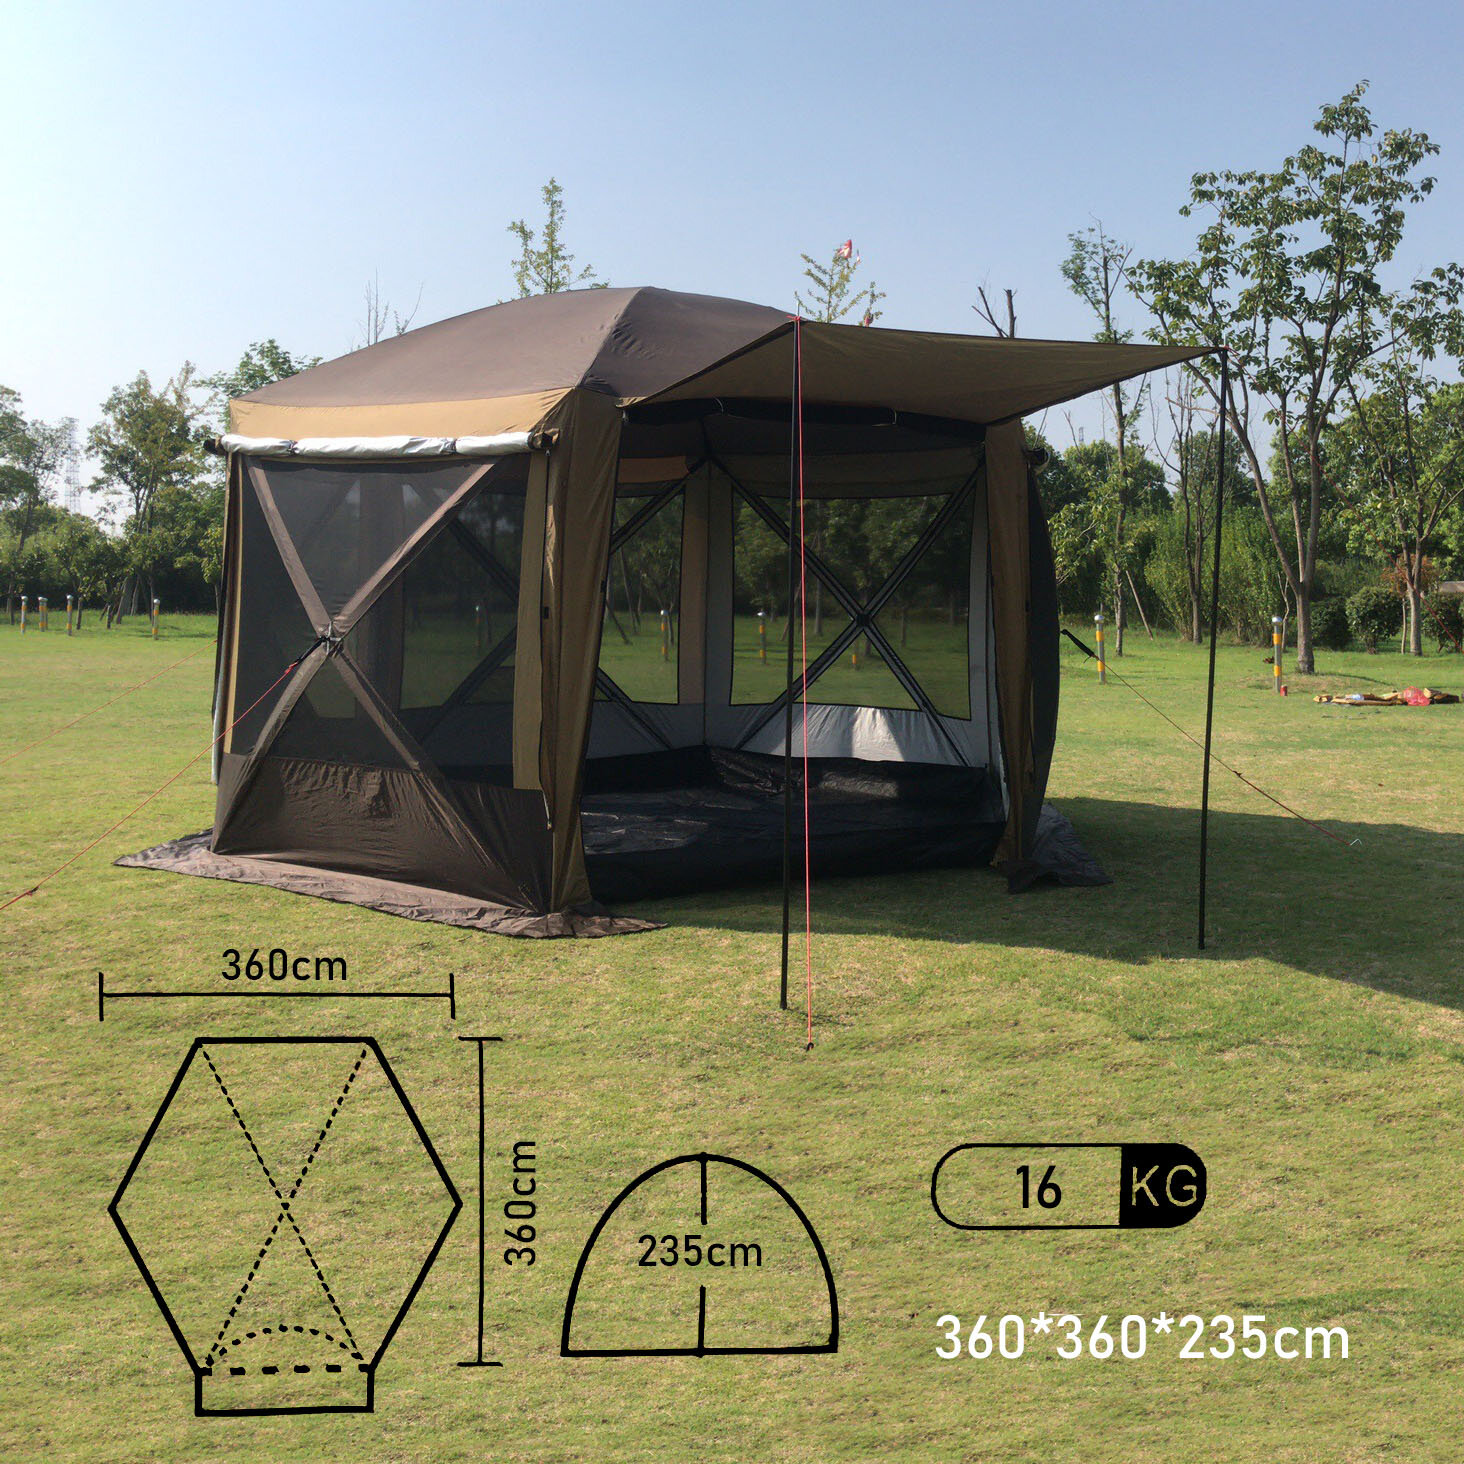 Шестиугольный тент шатер с полом Mircamping 2905 беседка для мероприятий туризма пикника и кемпинга